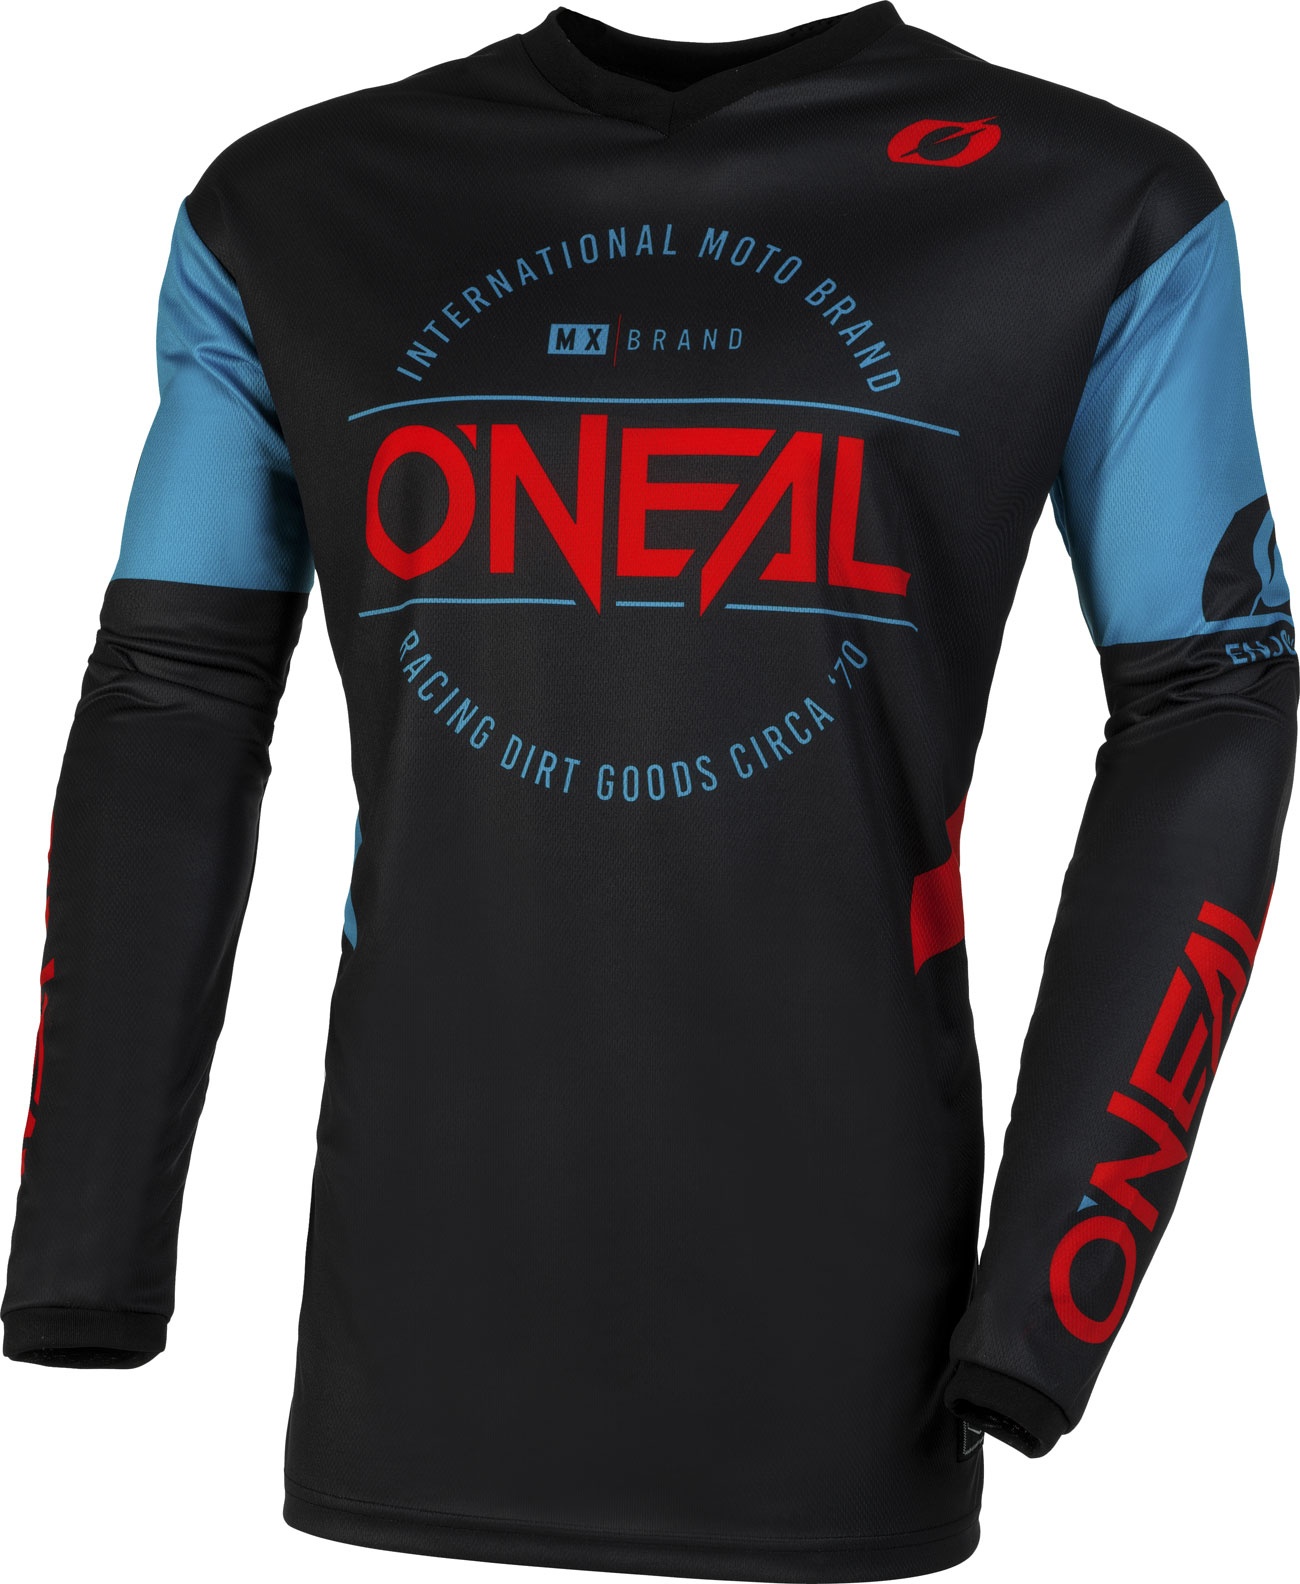 ONeal Element Brand S23, jersey - Noir/Bleu/Rouge - XXL